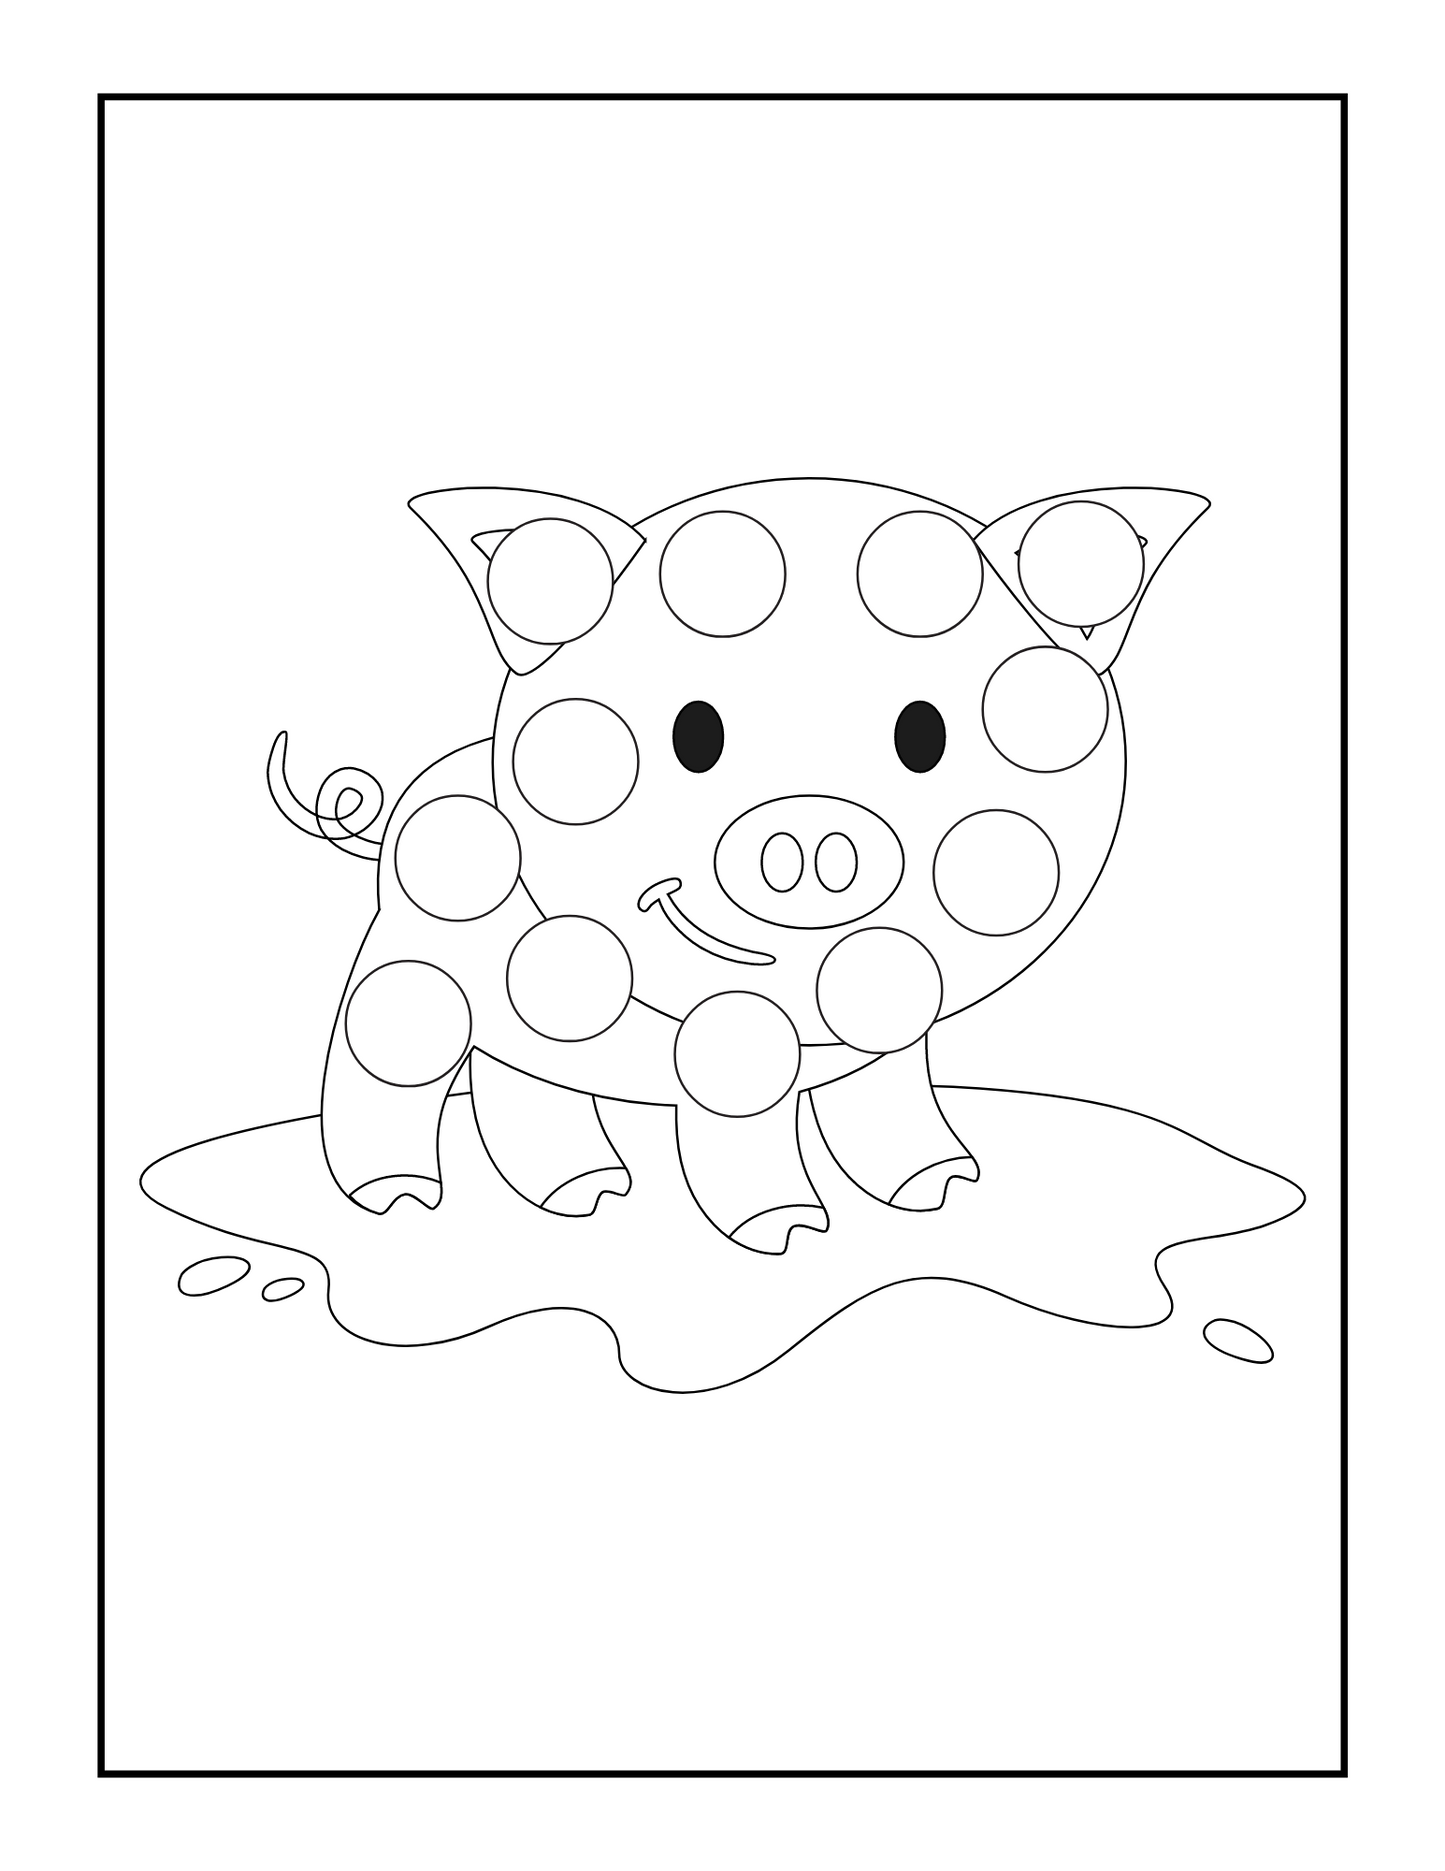 Libro de actividades de animales con marcador de puntos (imprimible)